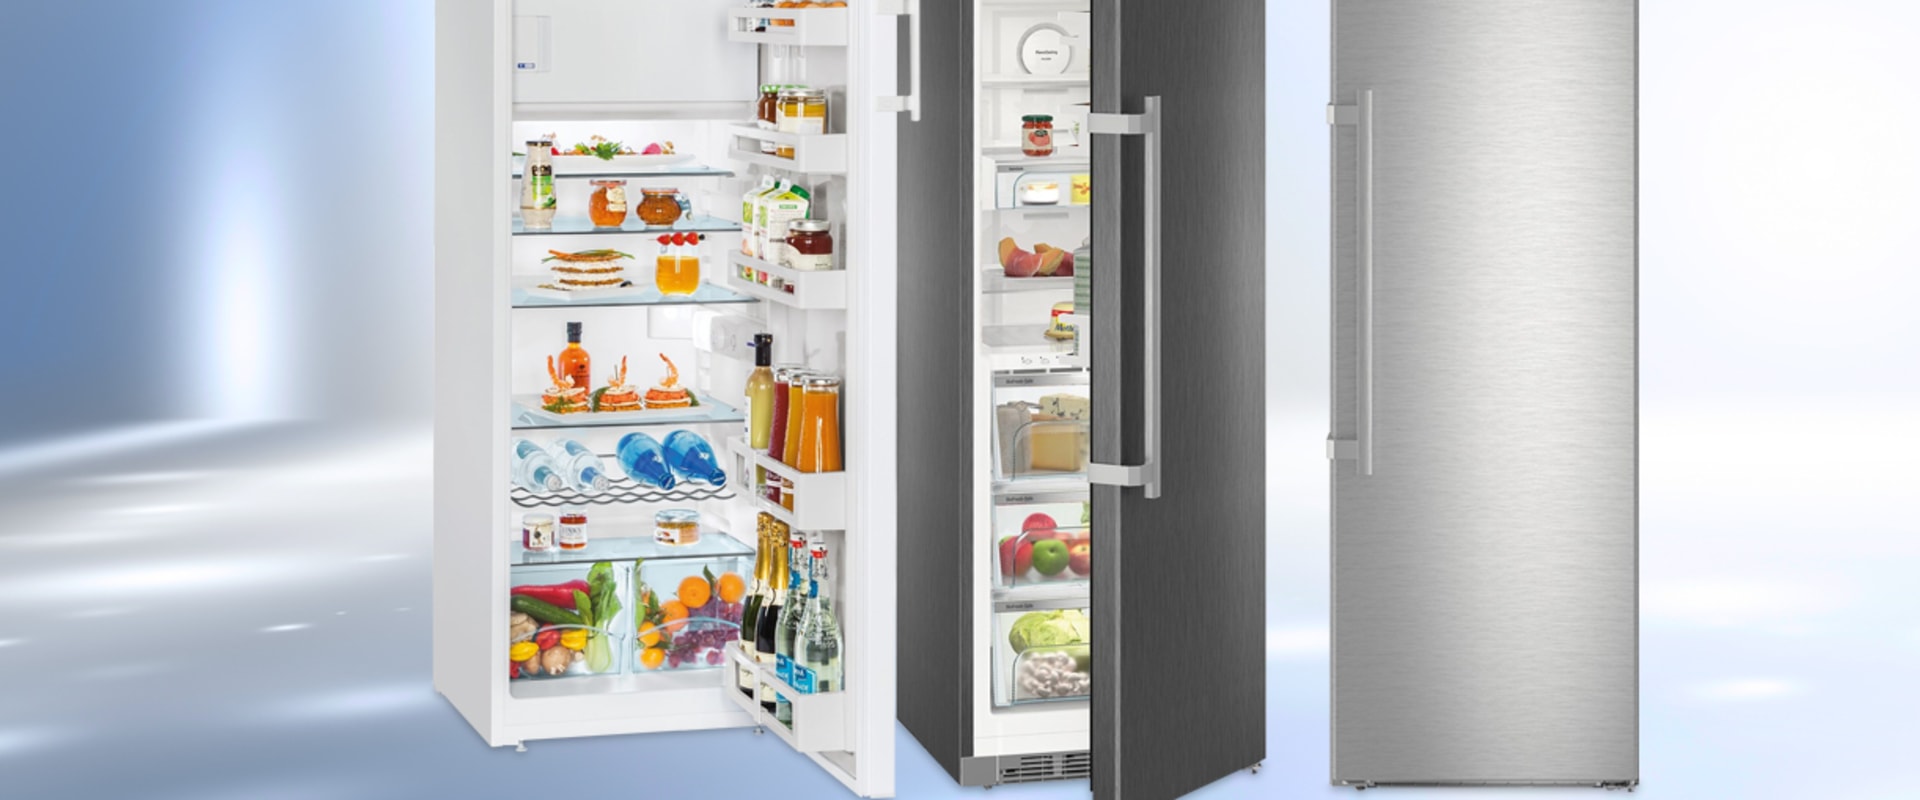 Welk merk koelkast heeft de minste problemen?